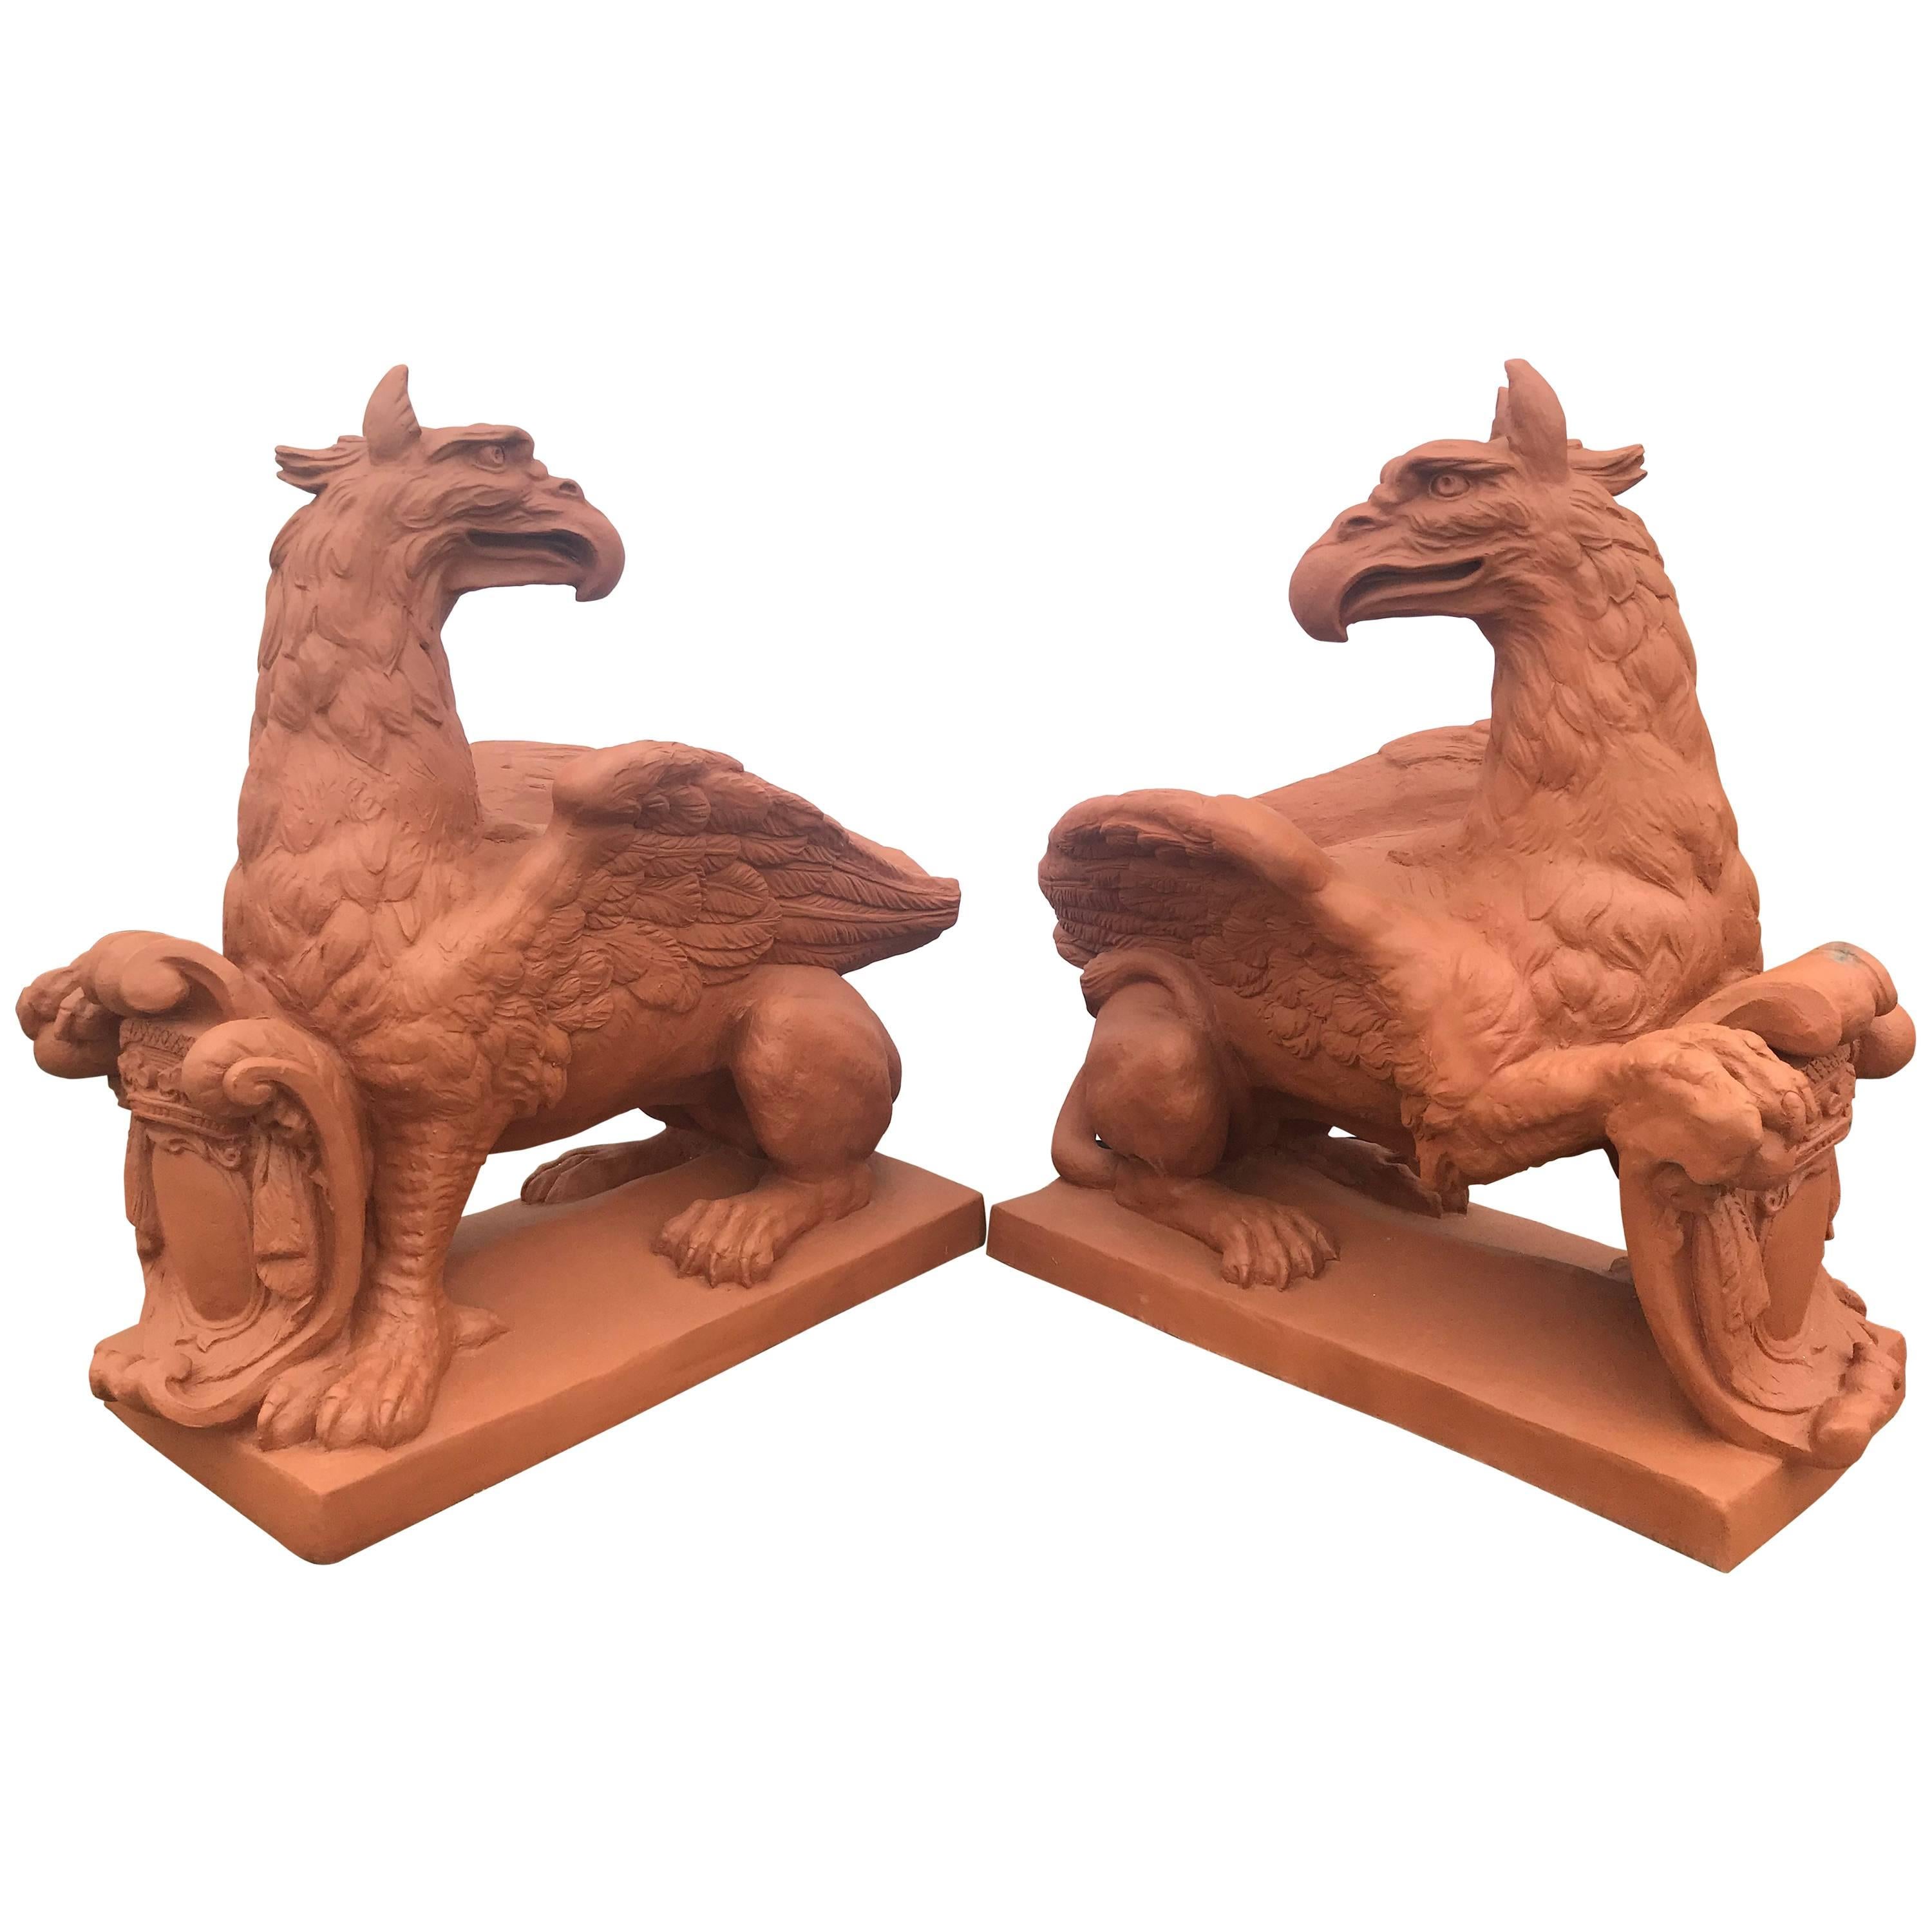 Pair of Monumental Outdoor Opposing Winged Full Bodied Terracotta Gargoyles